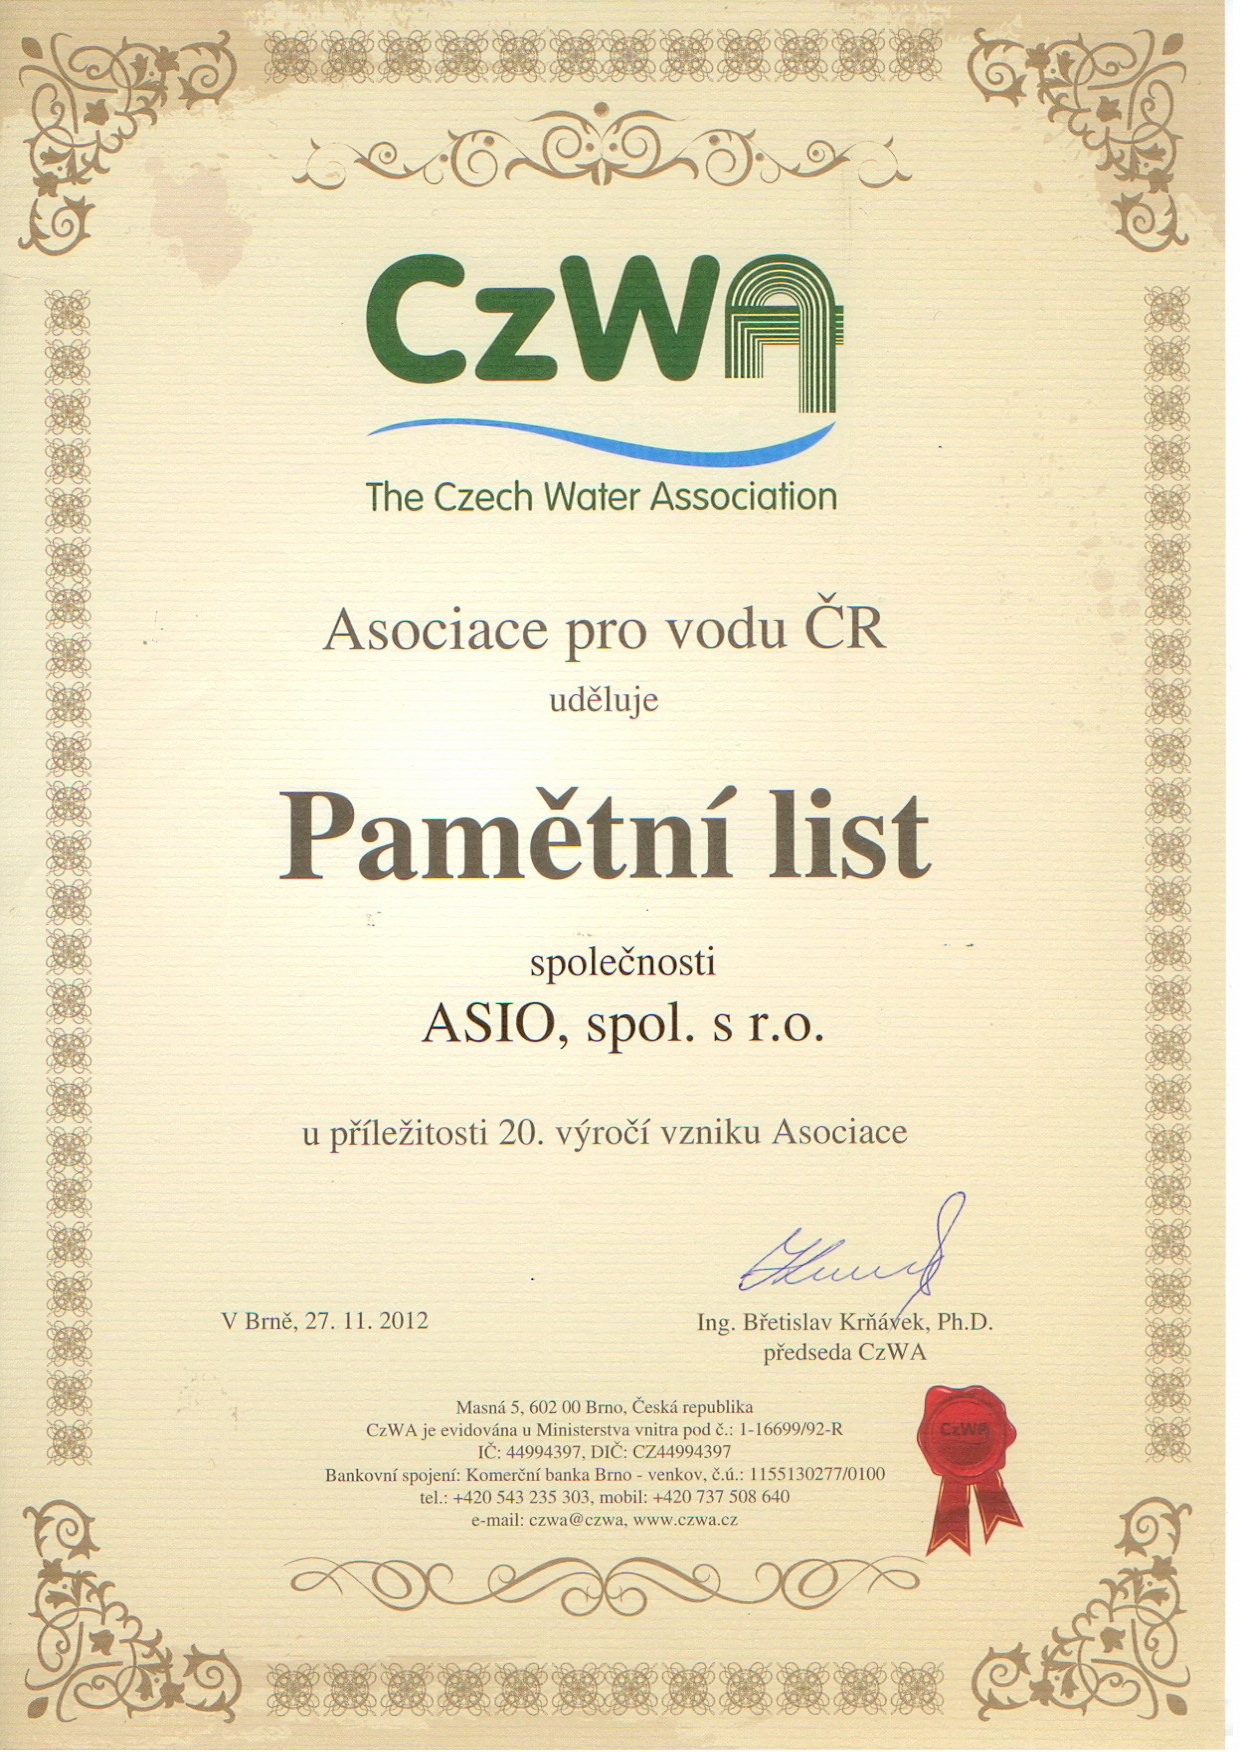 Pamětní list CzWA - ASIO